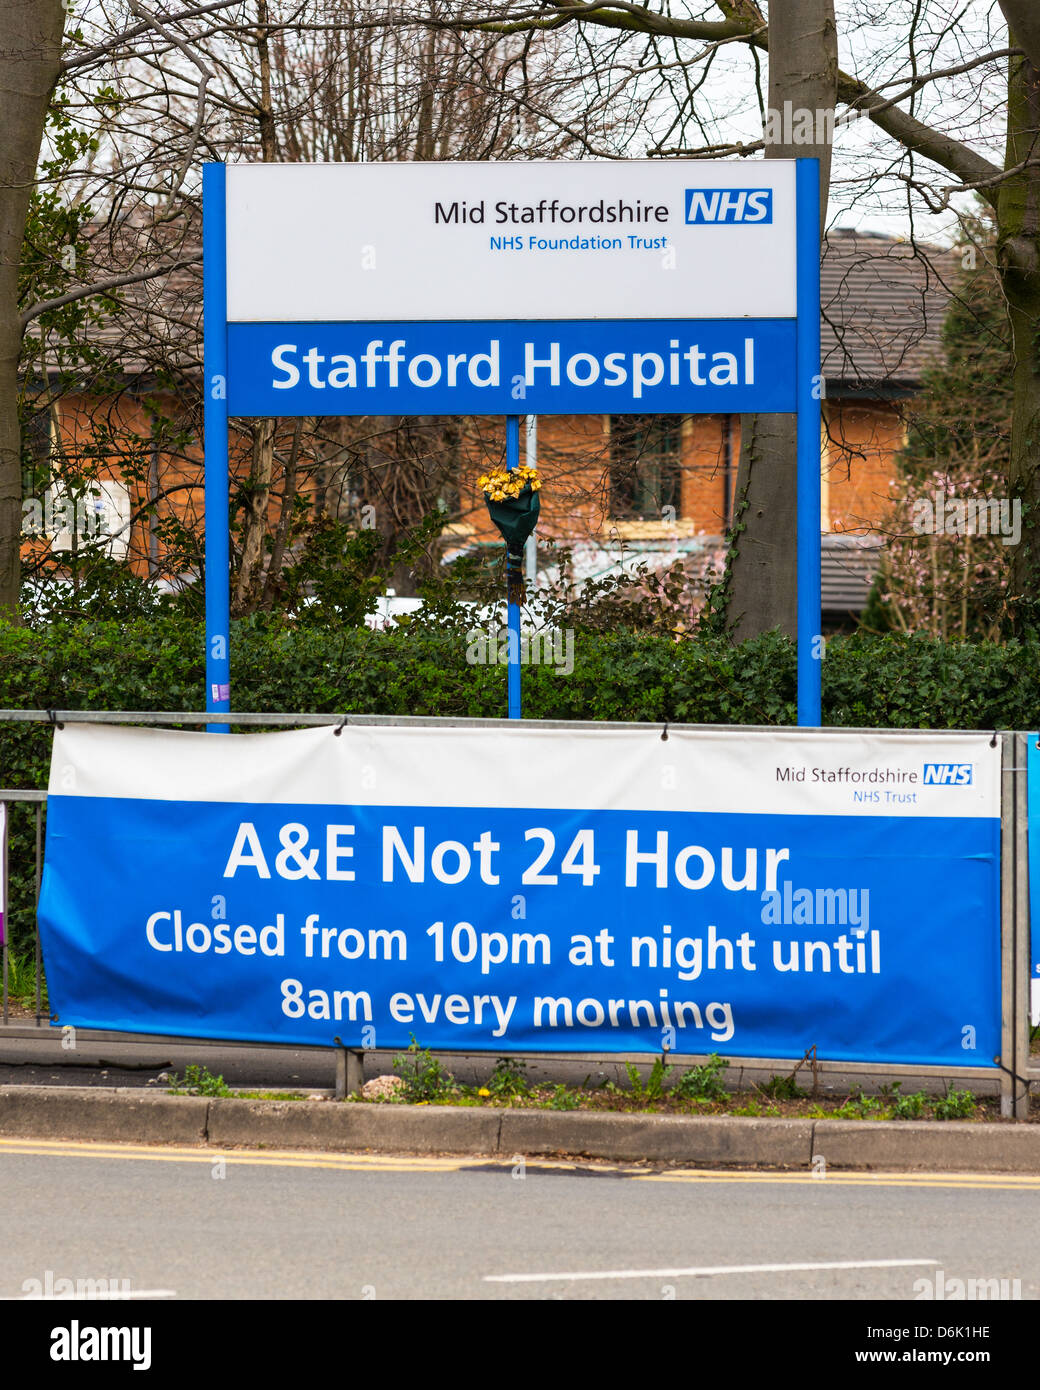 Stafford segni dell'ospedale, metà Staffordshire NHS Foundation Trust sotto inchiesta a causa di alti tassi di mortalità. Foto Stock